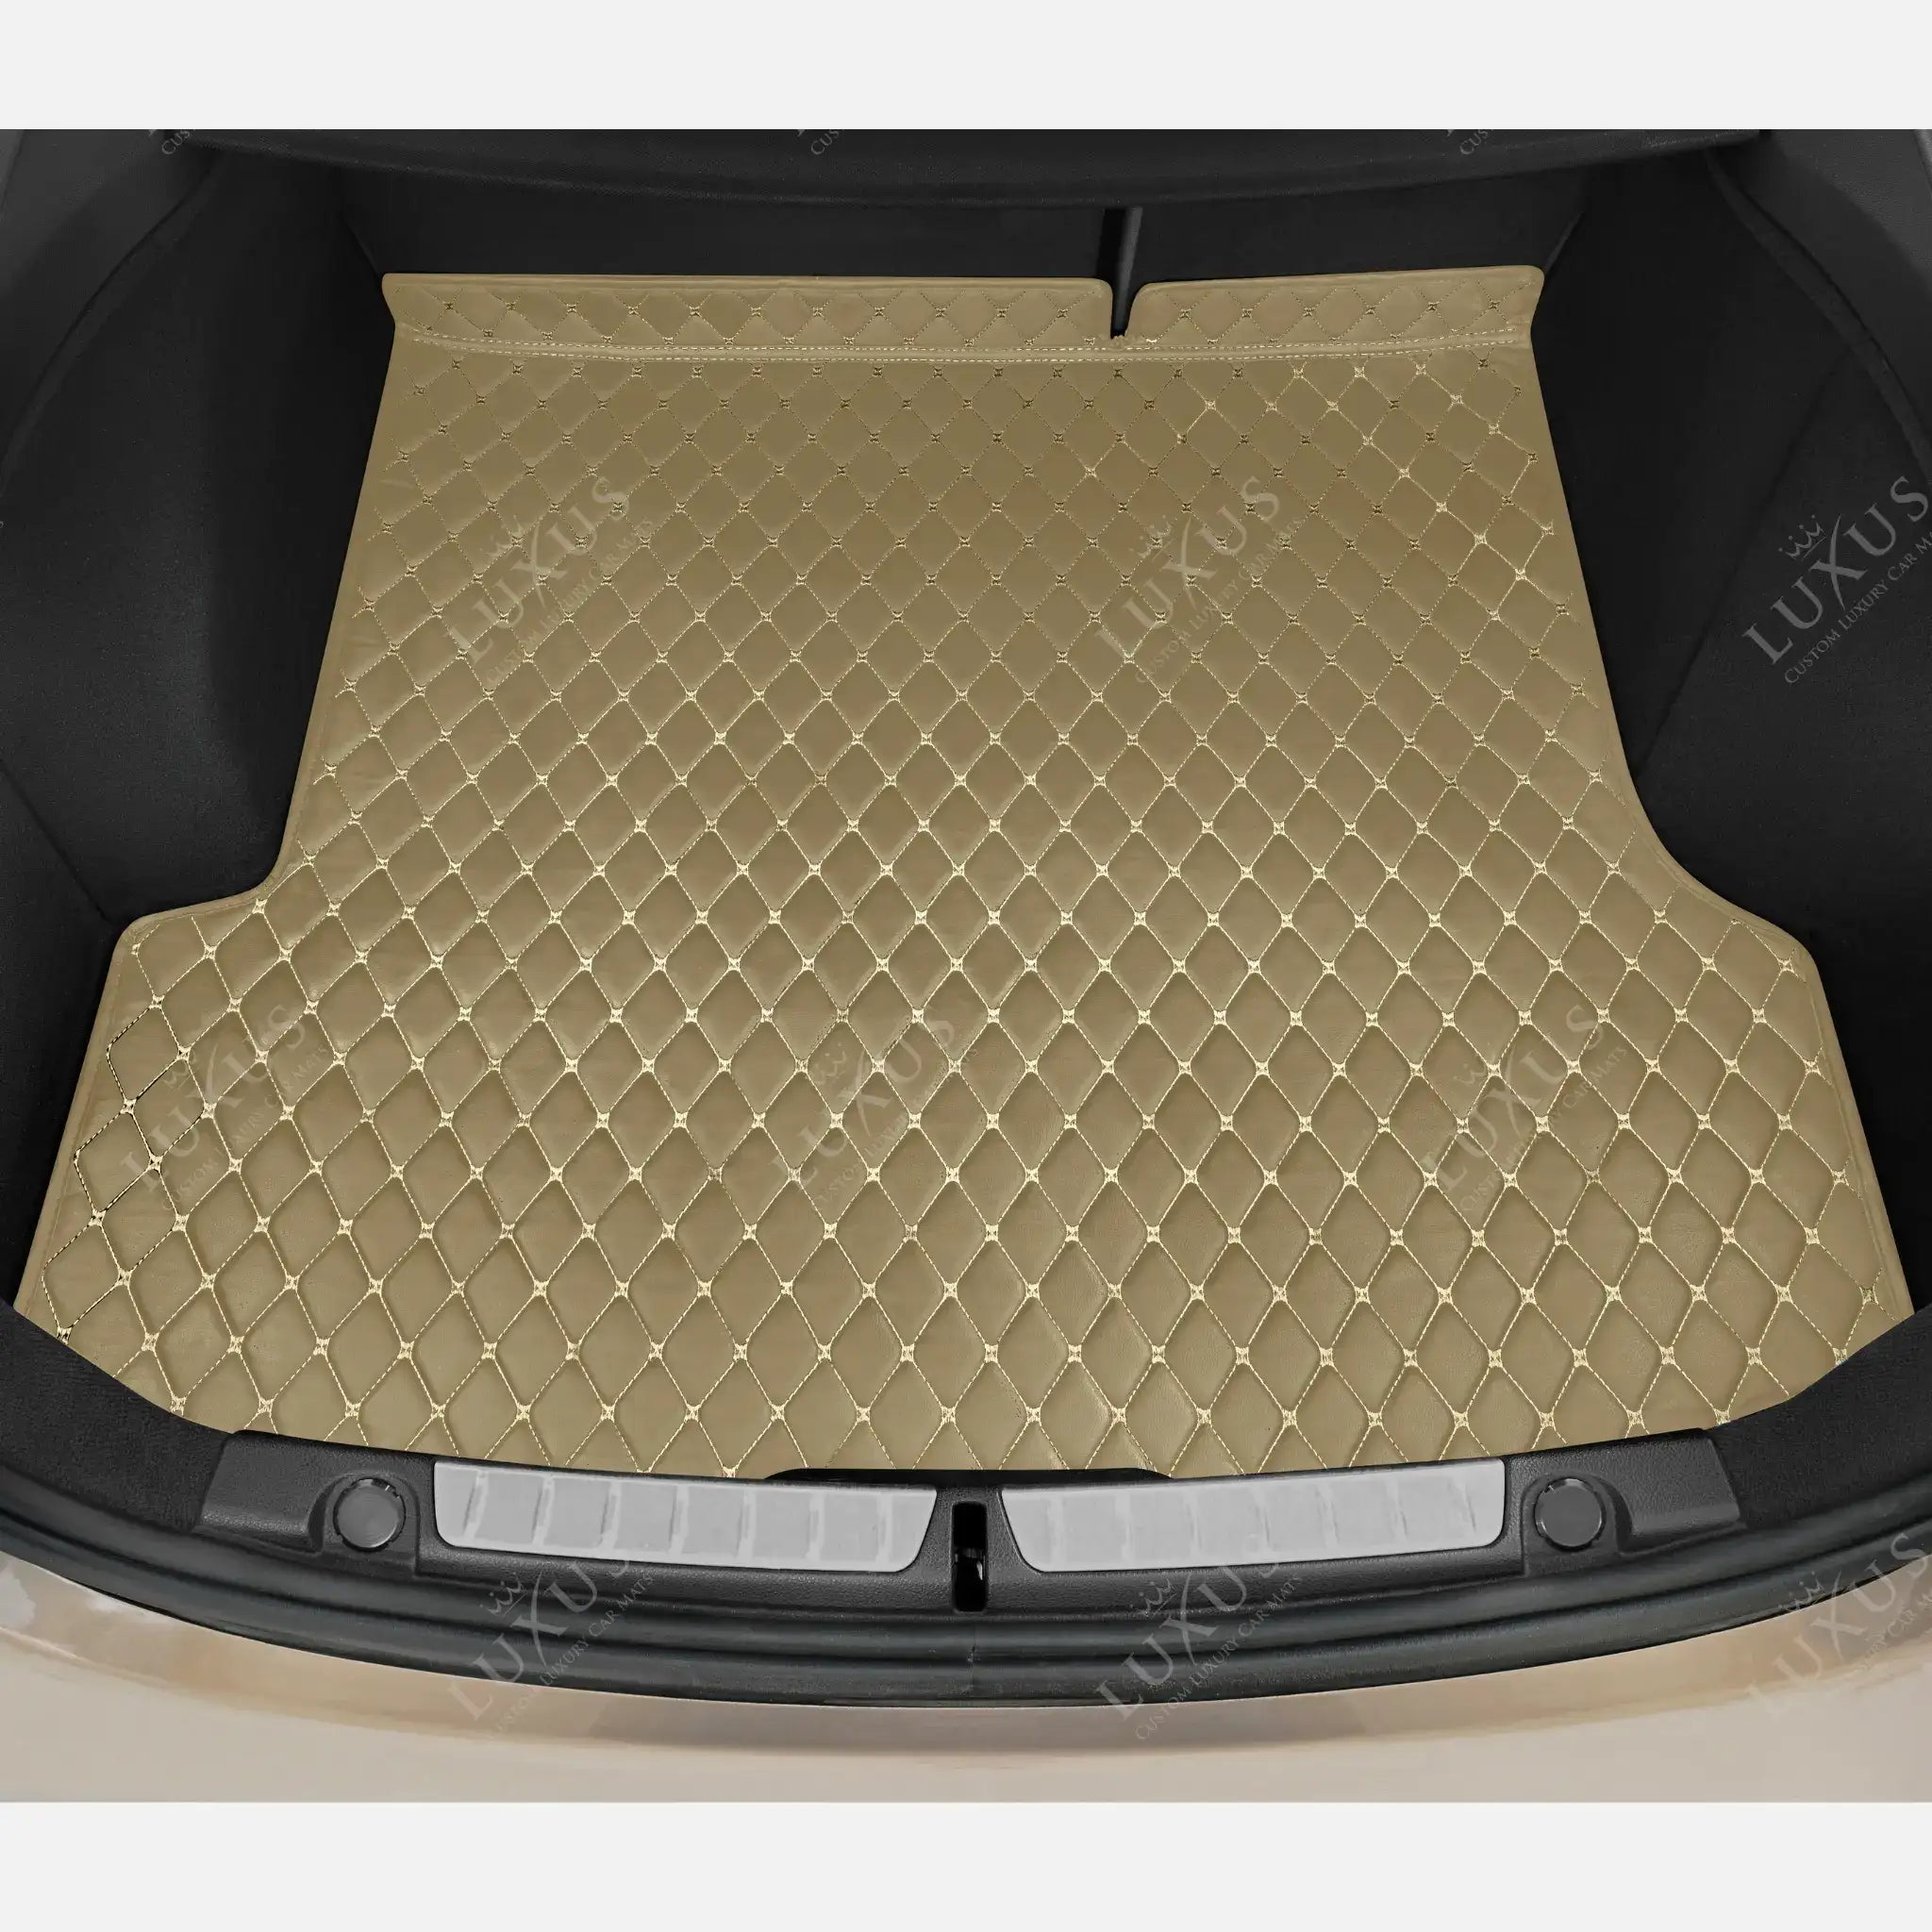 Luxus Car Mats™ - Alfombrilla para maletero/maletero de cuero de lujo beige crema